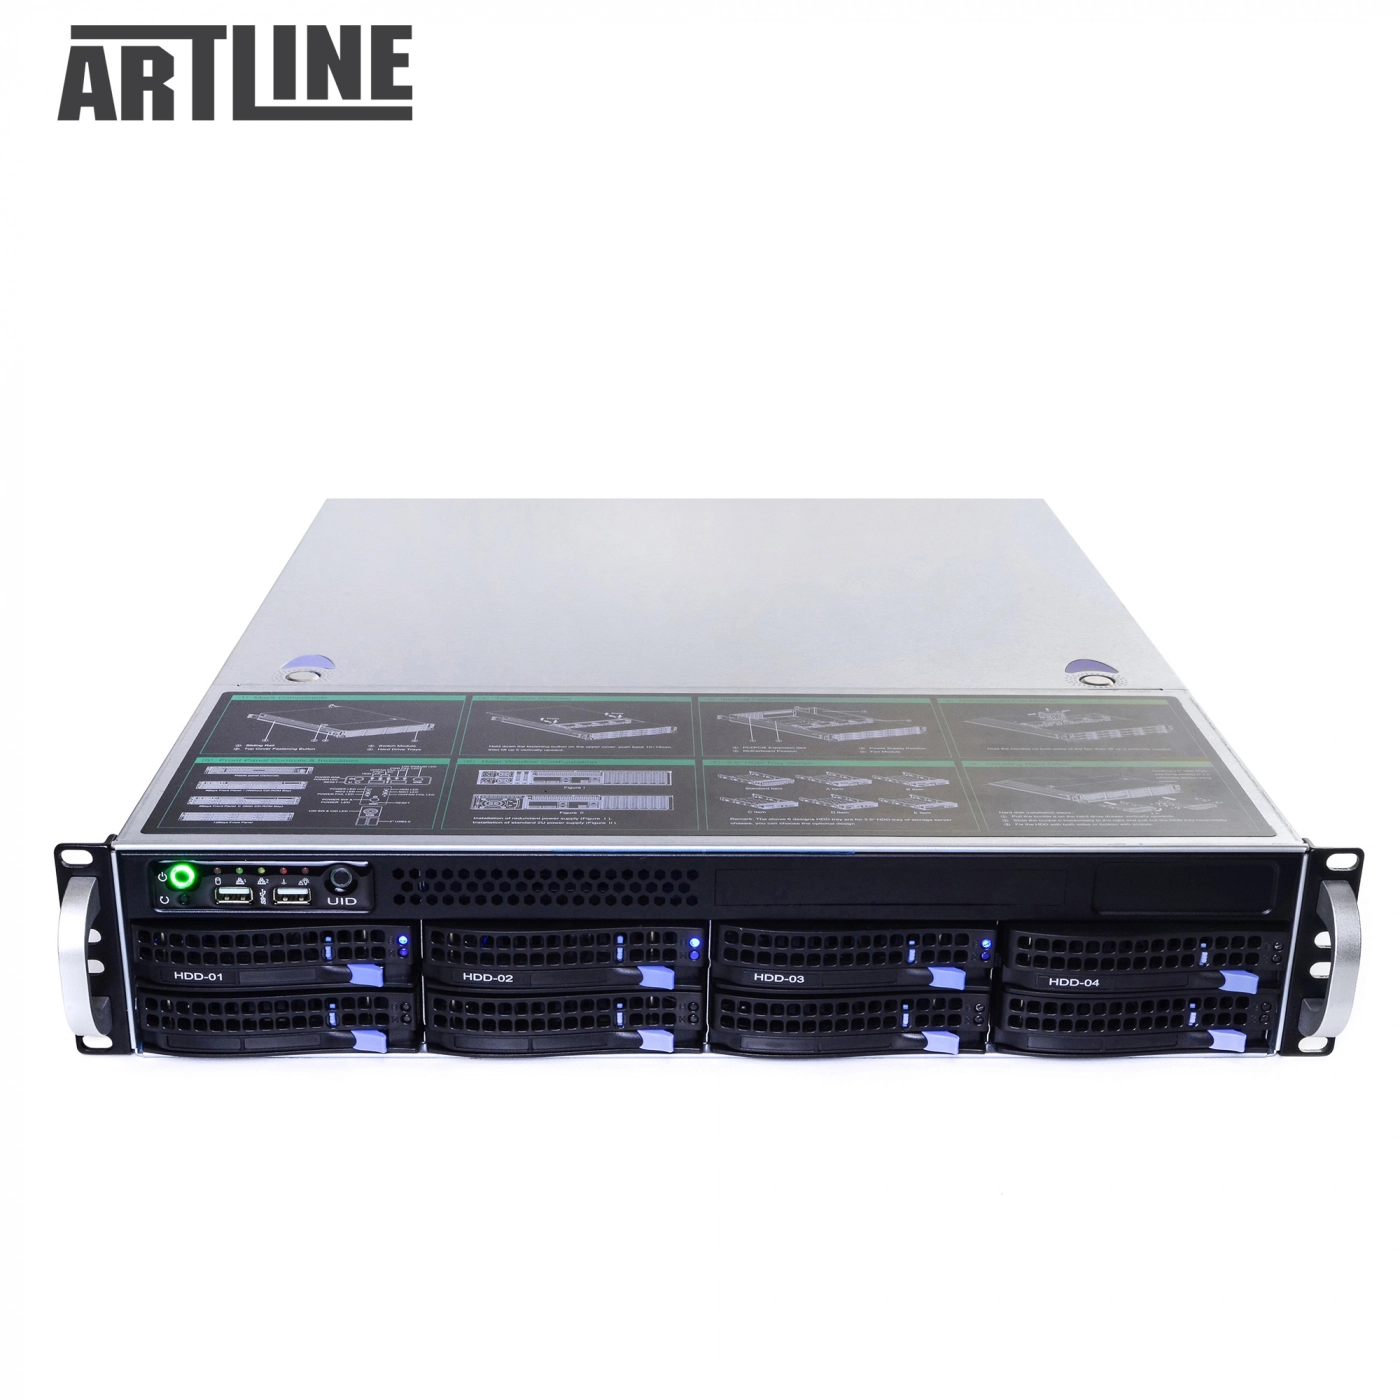 Купить Сервер ARTLINE Business R81v05 - фото 9